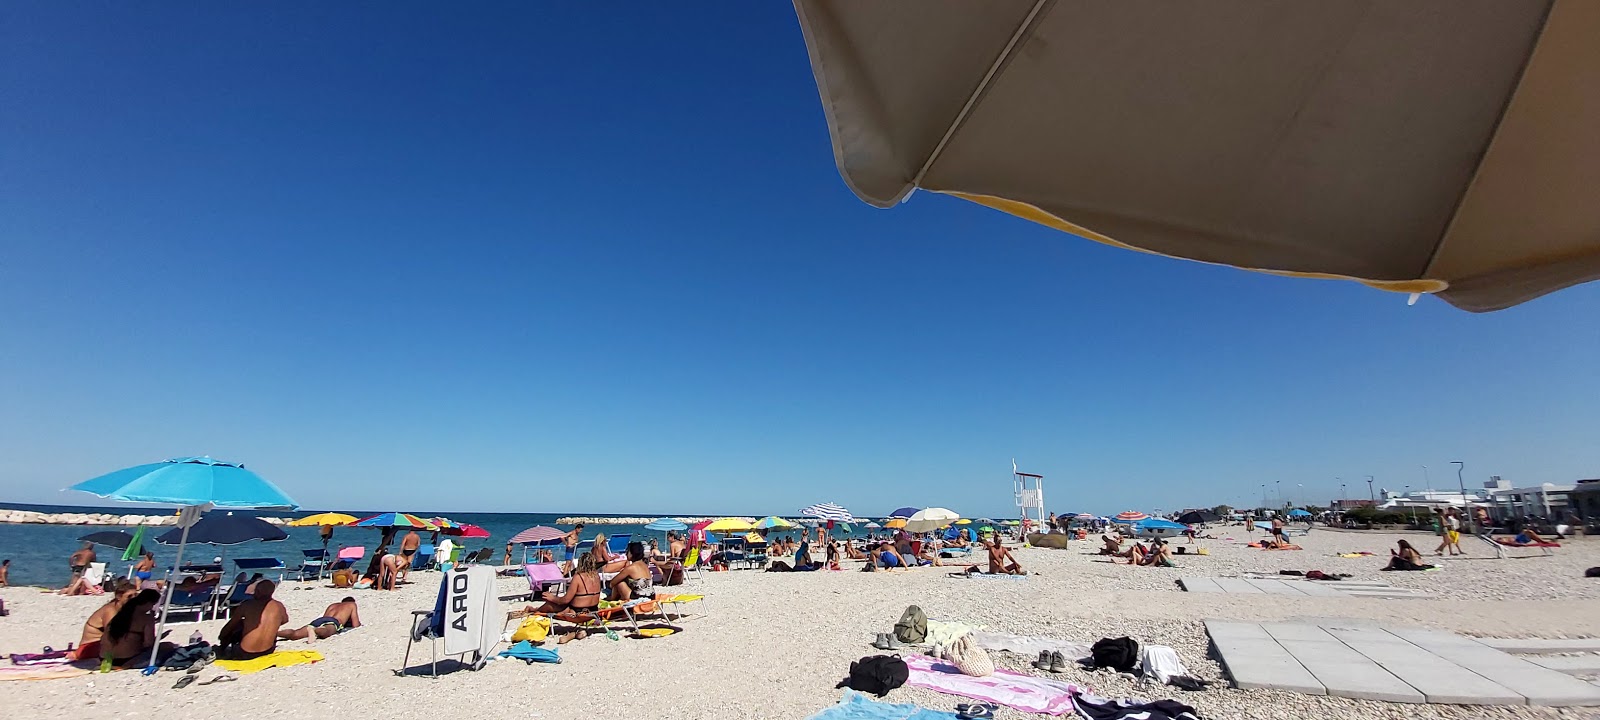 Photo de Spiaggia Sassonia di Fano - endroit populaire parmi les connaisseurs de la détente